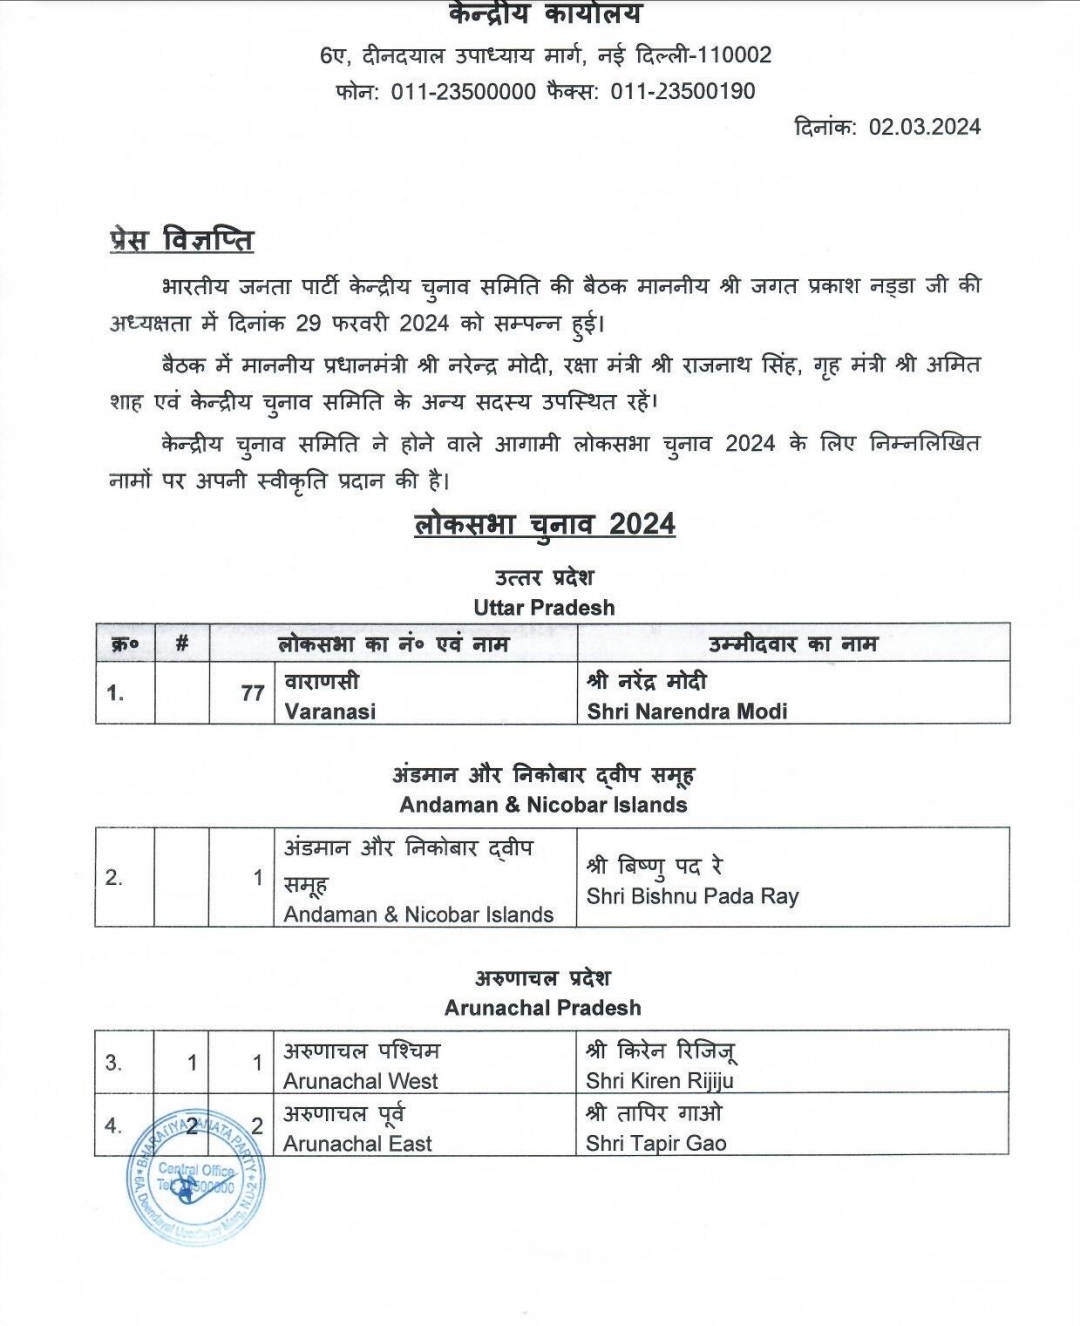 BJP releases its list,भाजपा ने 18वीं लोक सभा के लिए अपने प्रत्याशियों की सूची जारी की, अन्य पार्टियों में खलबली।